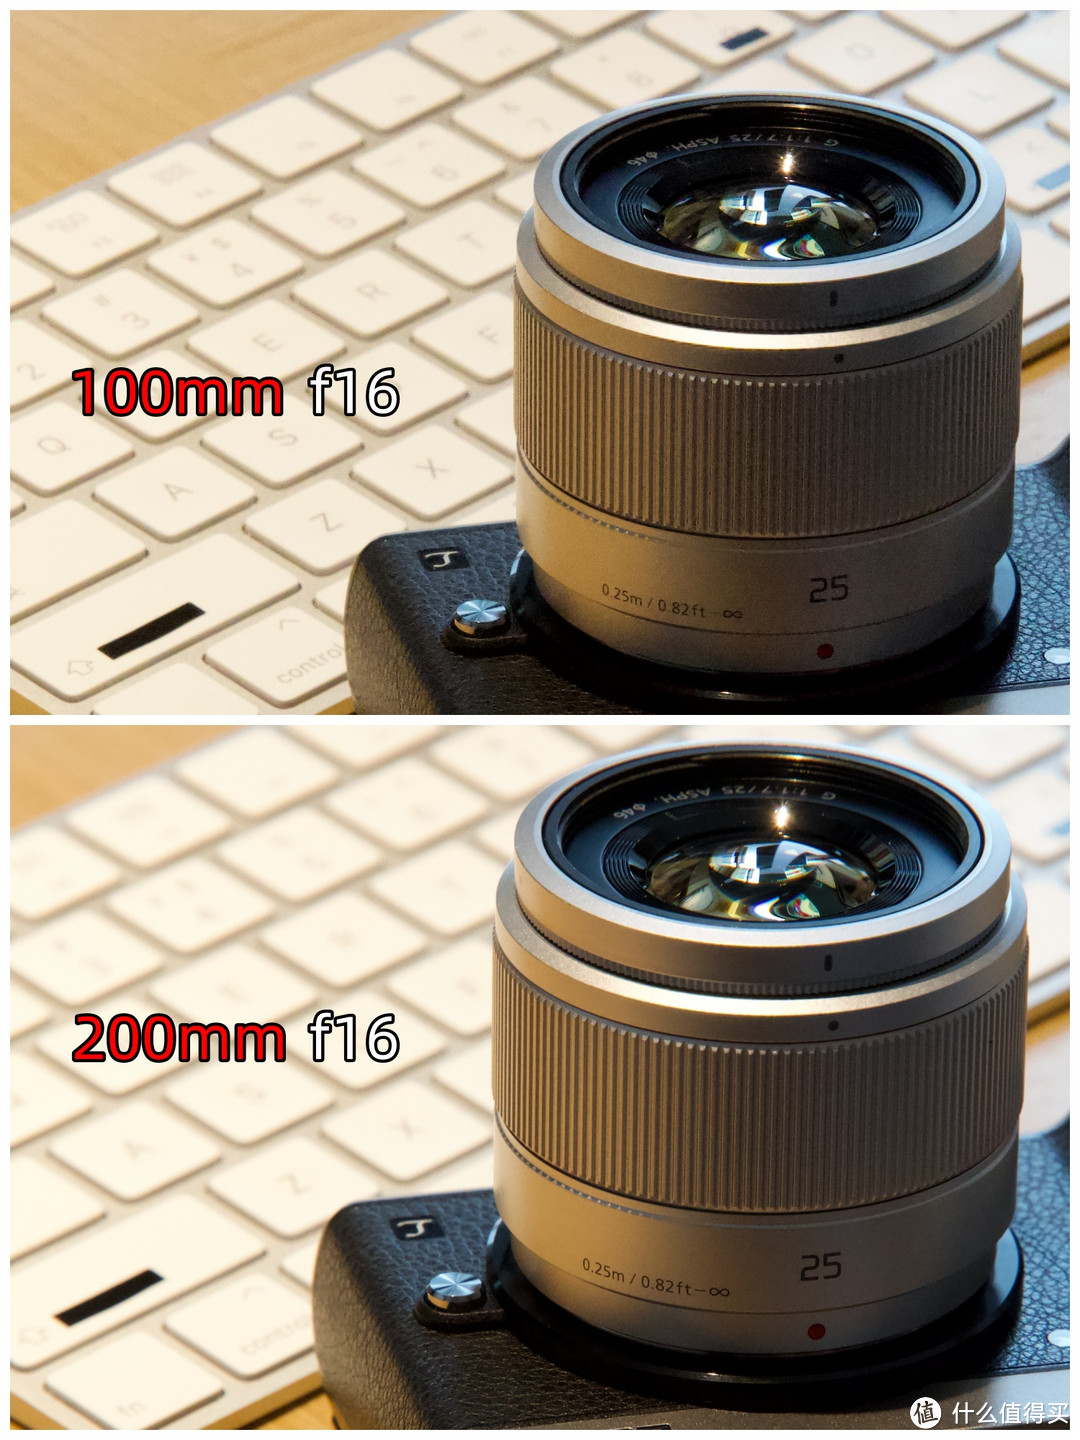 二者都是f16（光圈很小）但更长的焦段能获得更好的背景虚化效果。此对比图的原图有剪裁。